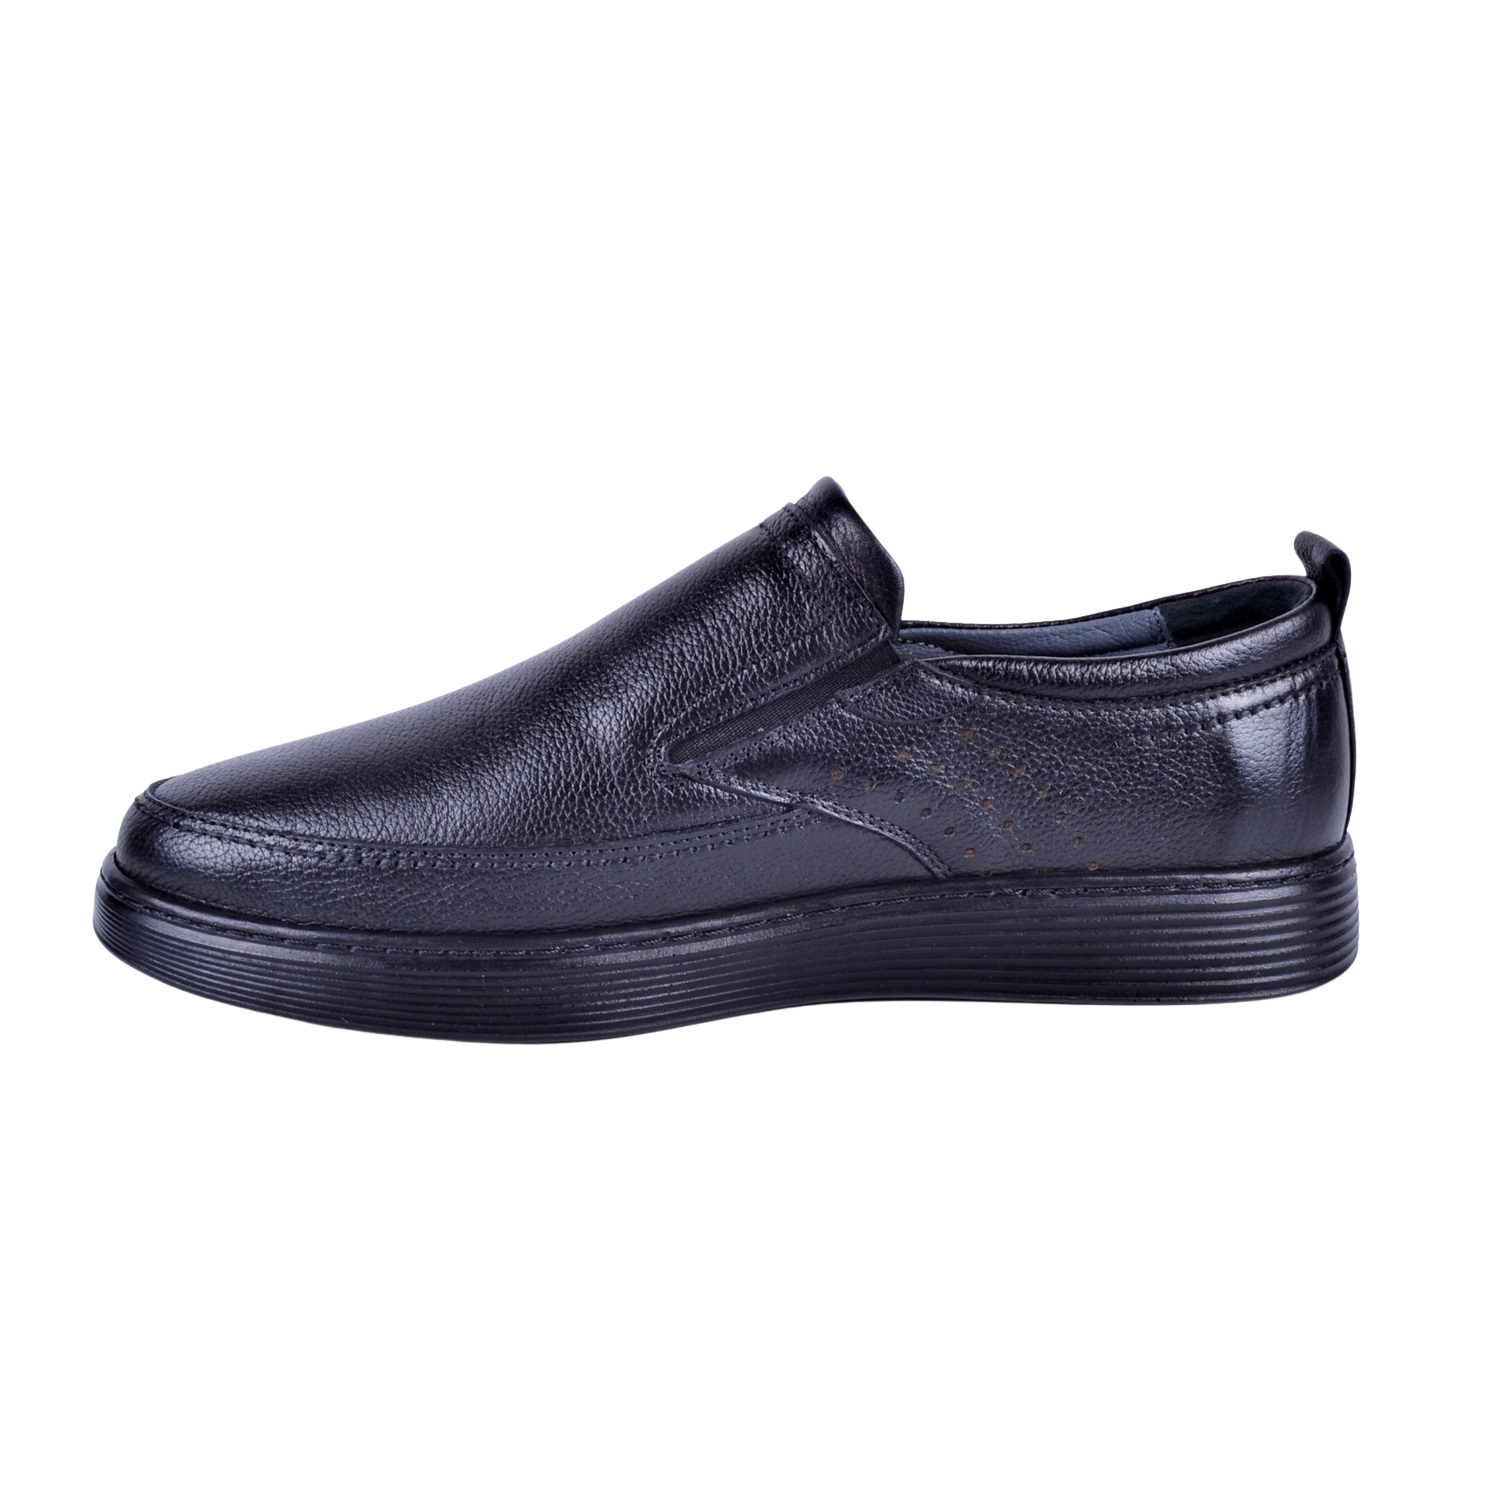 Smbir 2101 Siyah Erkek Deri Ayakkabı